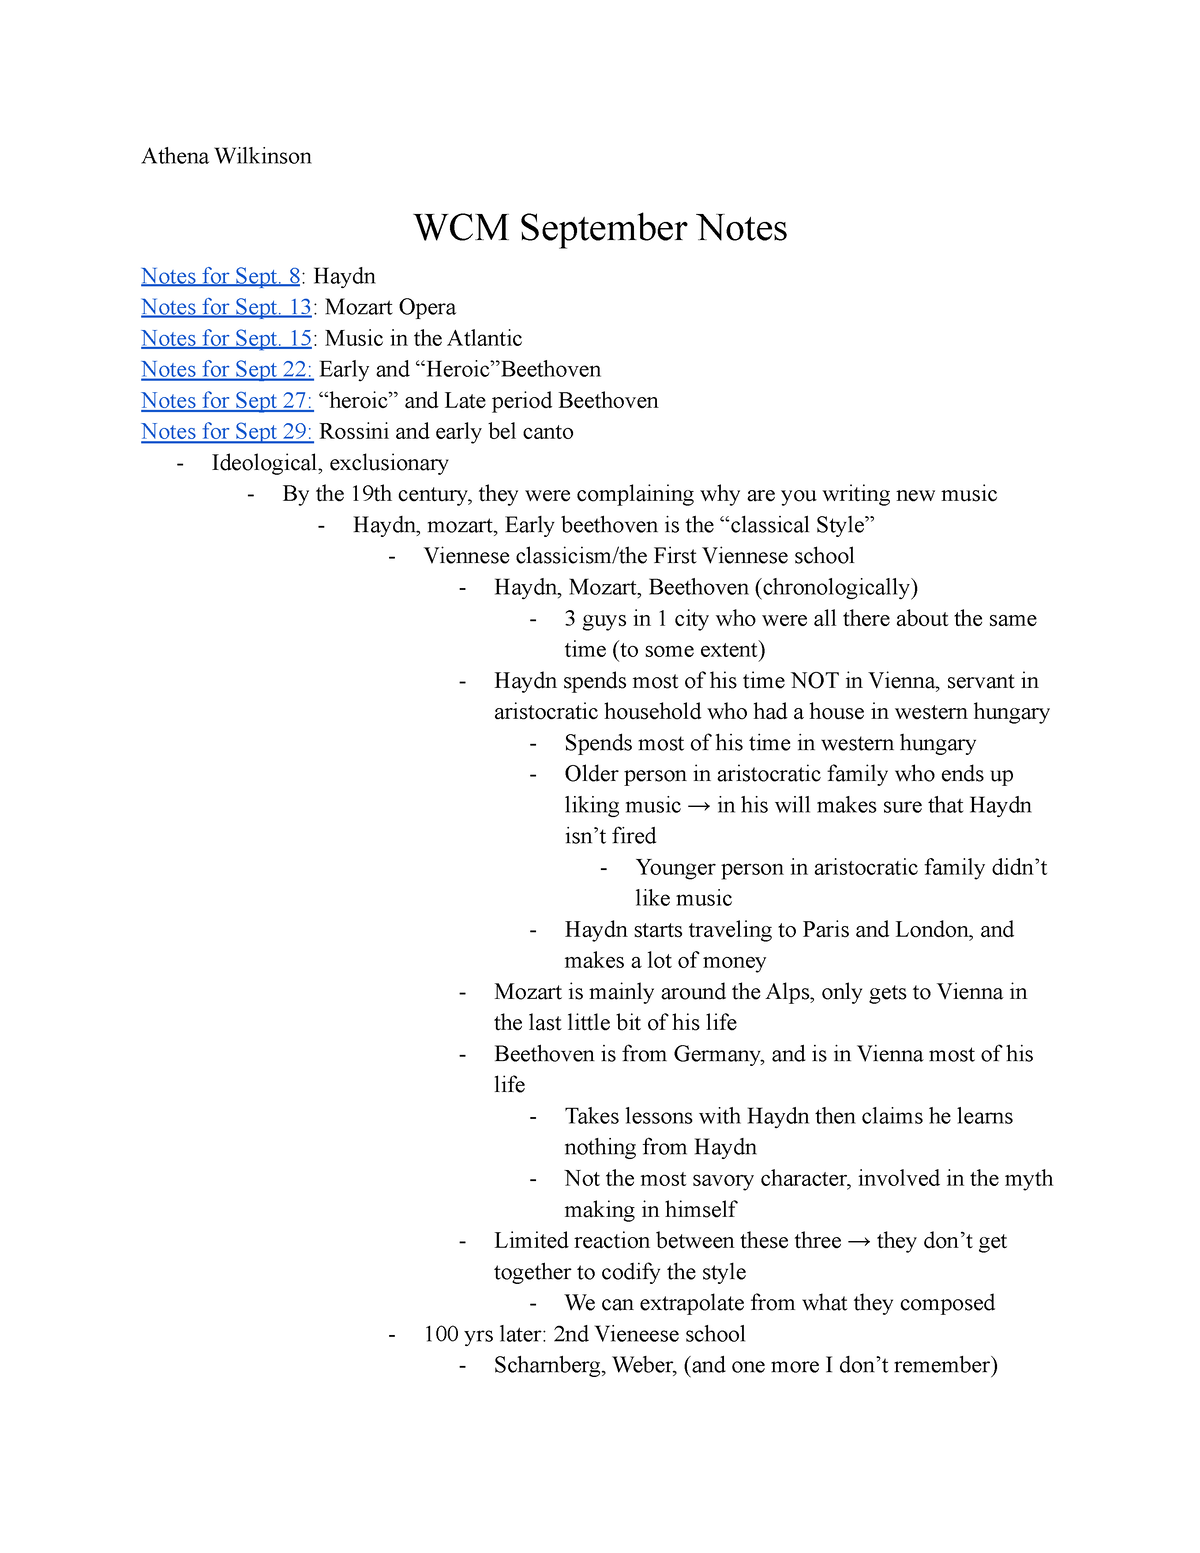 Wcm notes